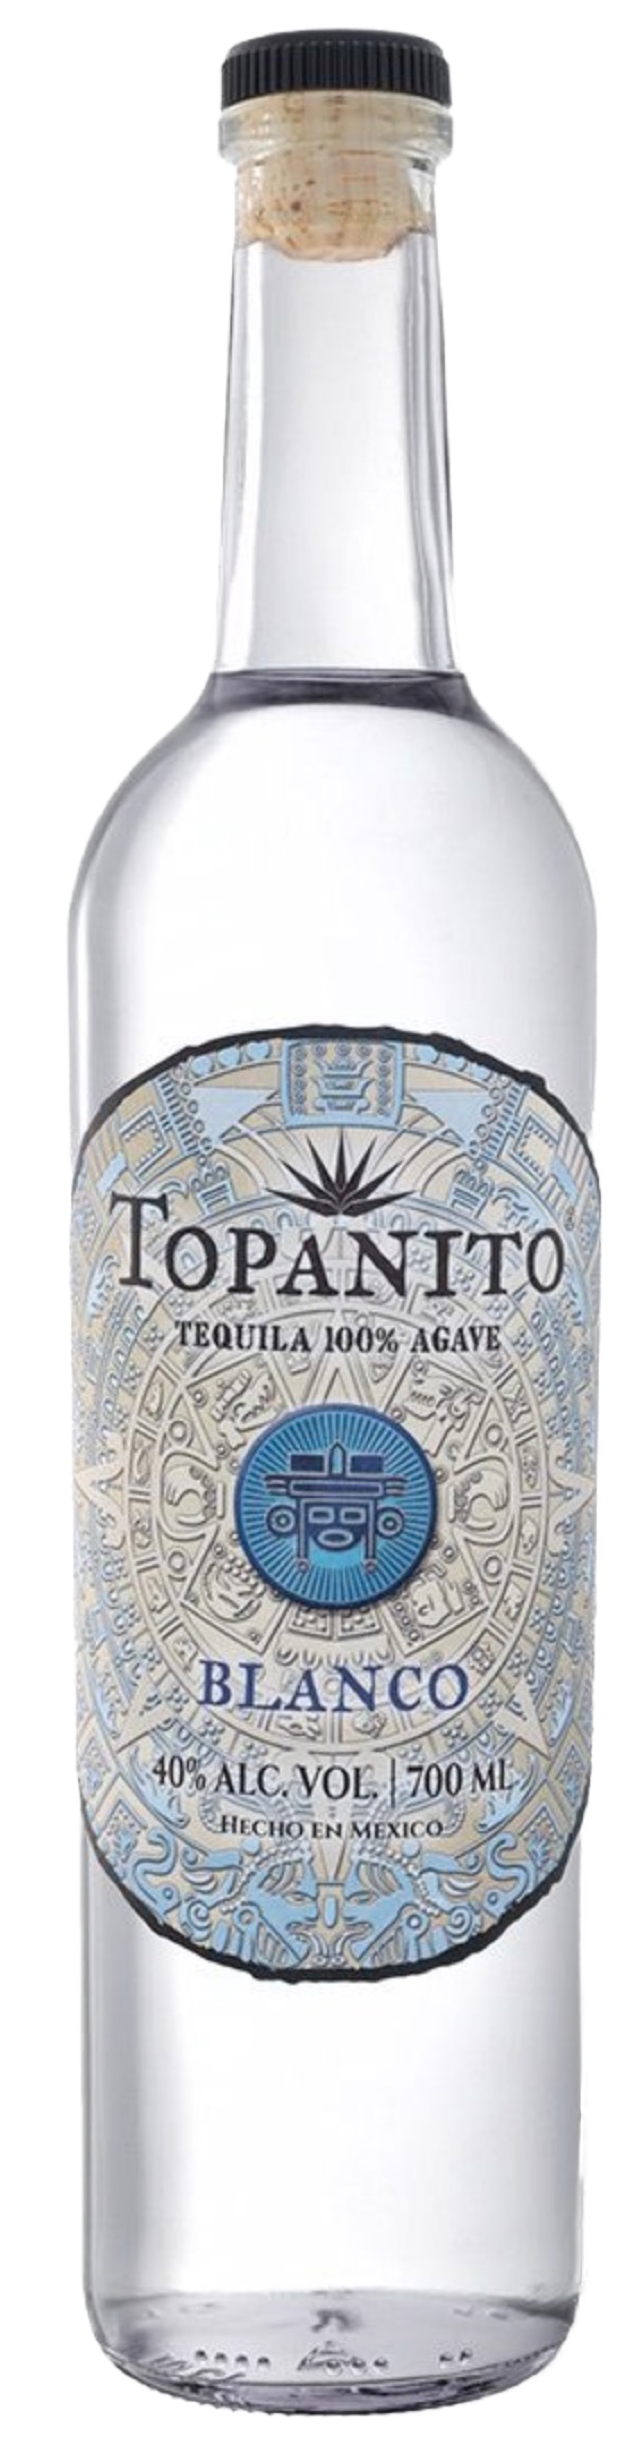 Topanito Blanco Agave Tequila 40% vol. 0,7L